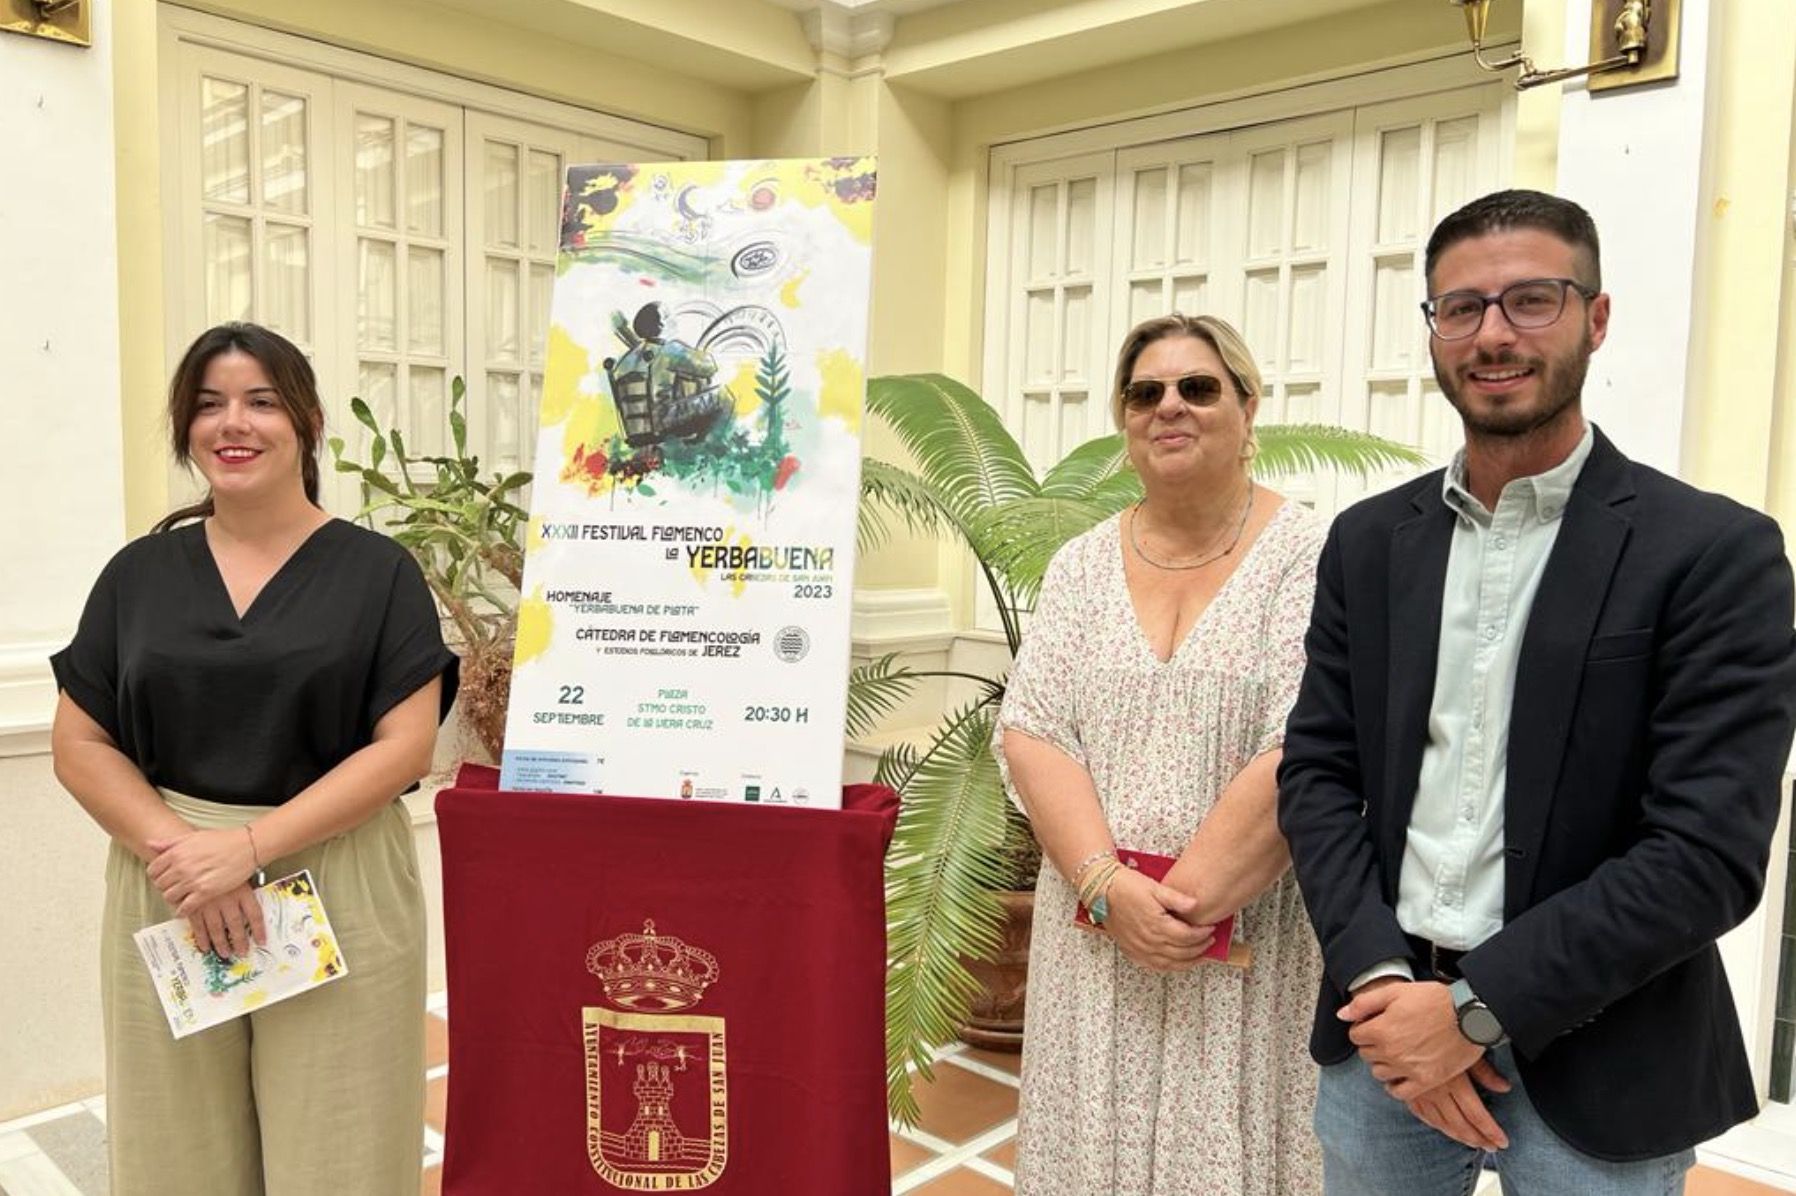 La Cátedra de Flamencología de Jerez será reconocida con la Yerbabuena de Plata del festival flamenco de Las Cabezas de San Juan